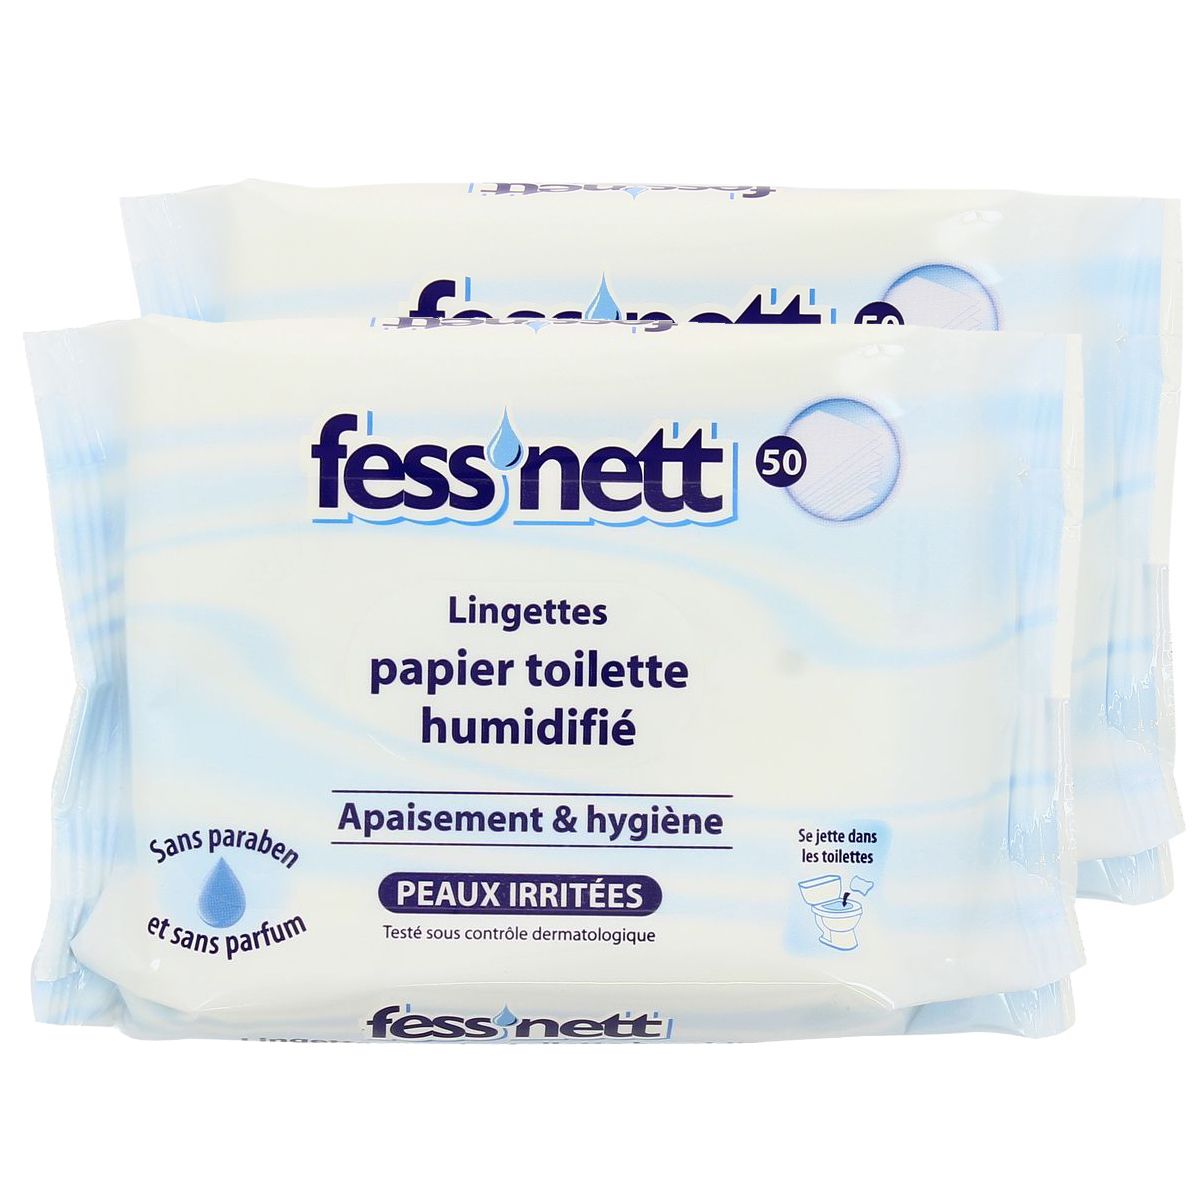 Fess'nett Papier Toilette Humide Aloe Vera, Le paquet de 50 lingettes